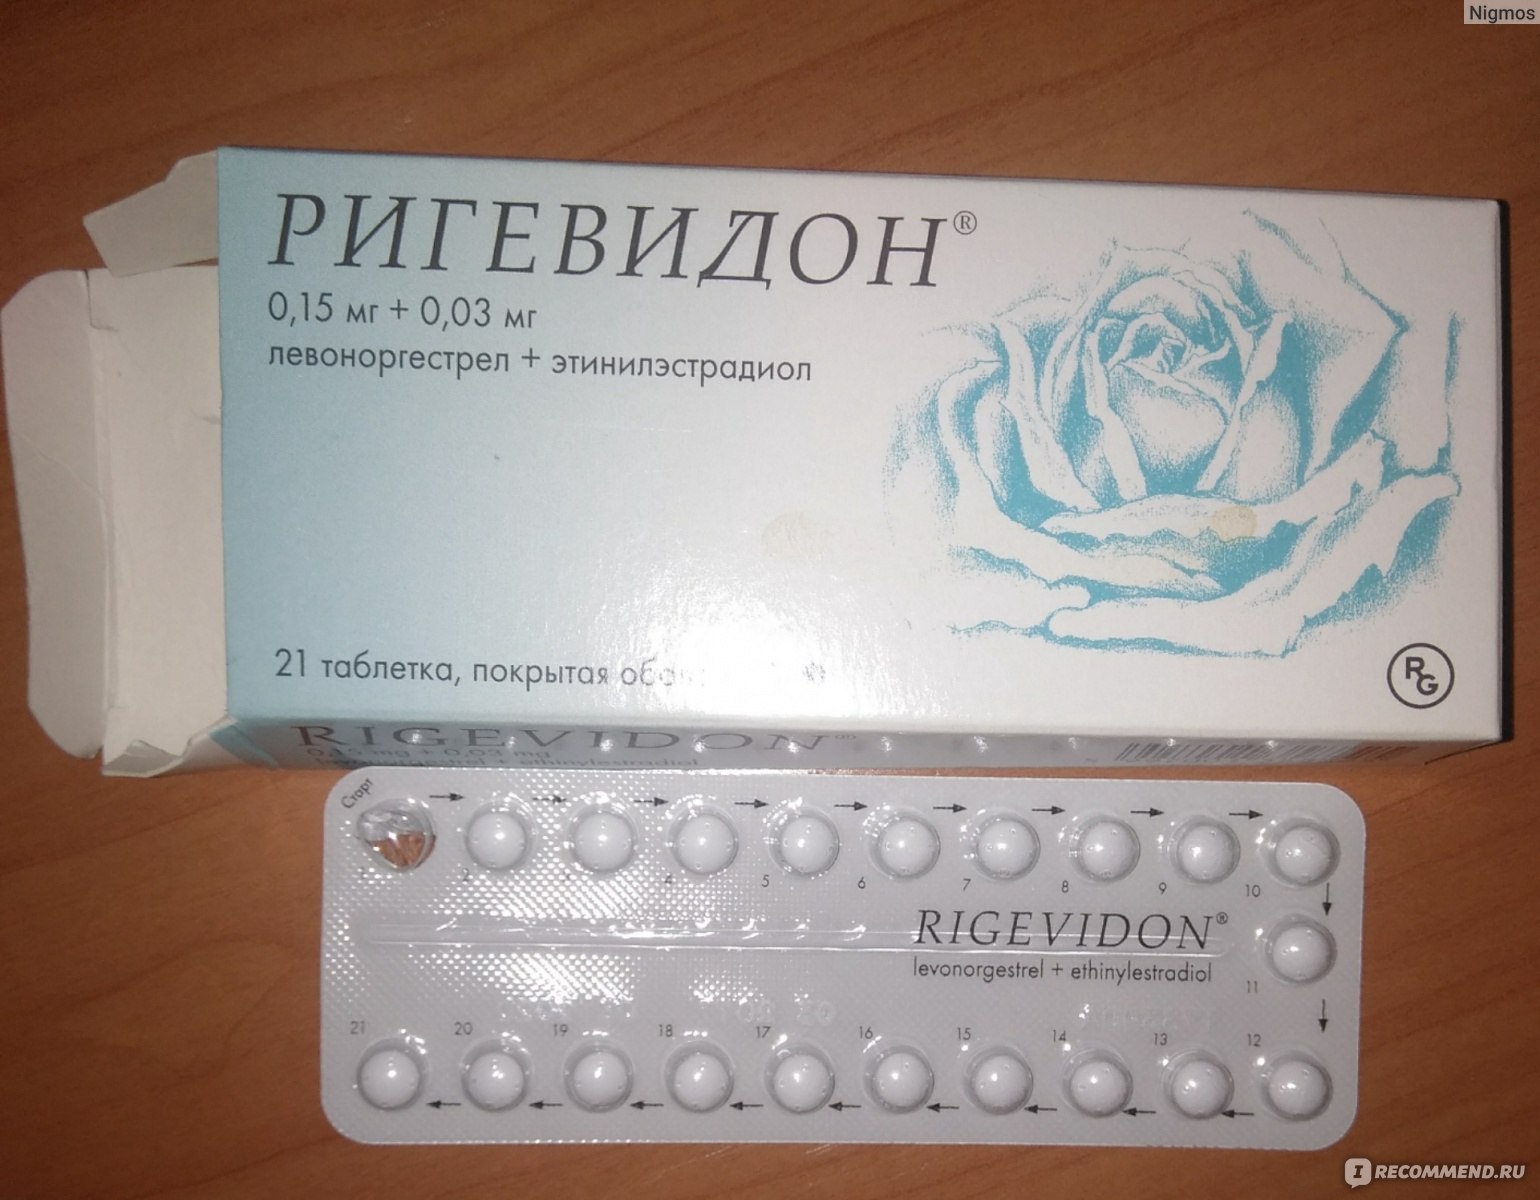 Противозачаточные для мужчин название. Противозачаточные таблетки ригевидон. Гормональный препарат ригевидон. Противозачаточные таблетки для женщин ригевидон. Таблетки противозачаточные реговидон.